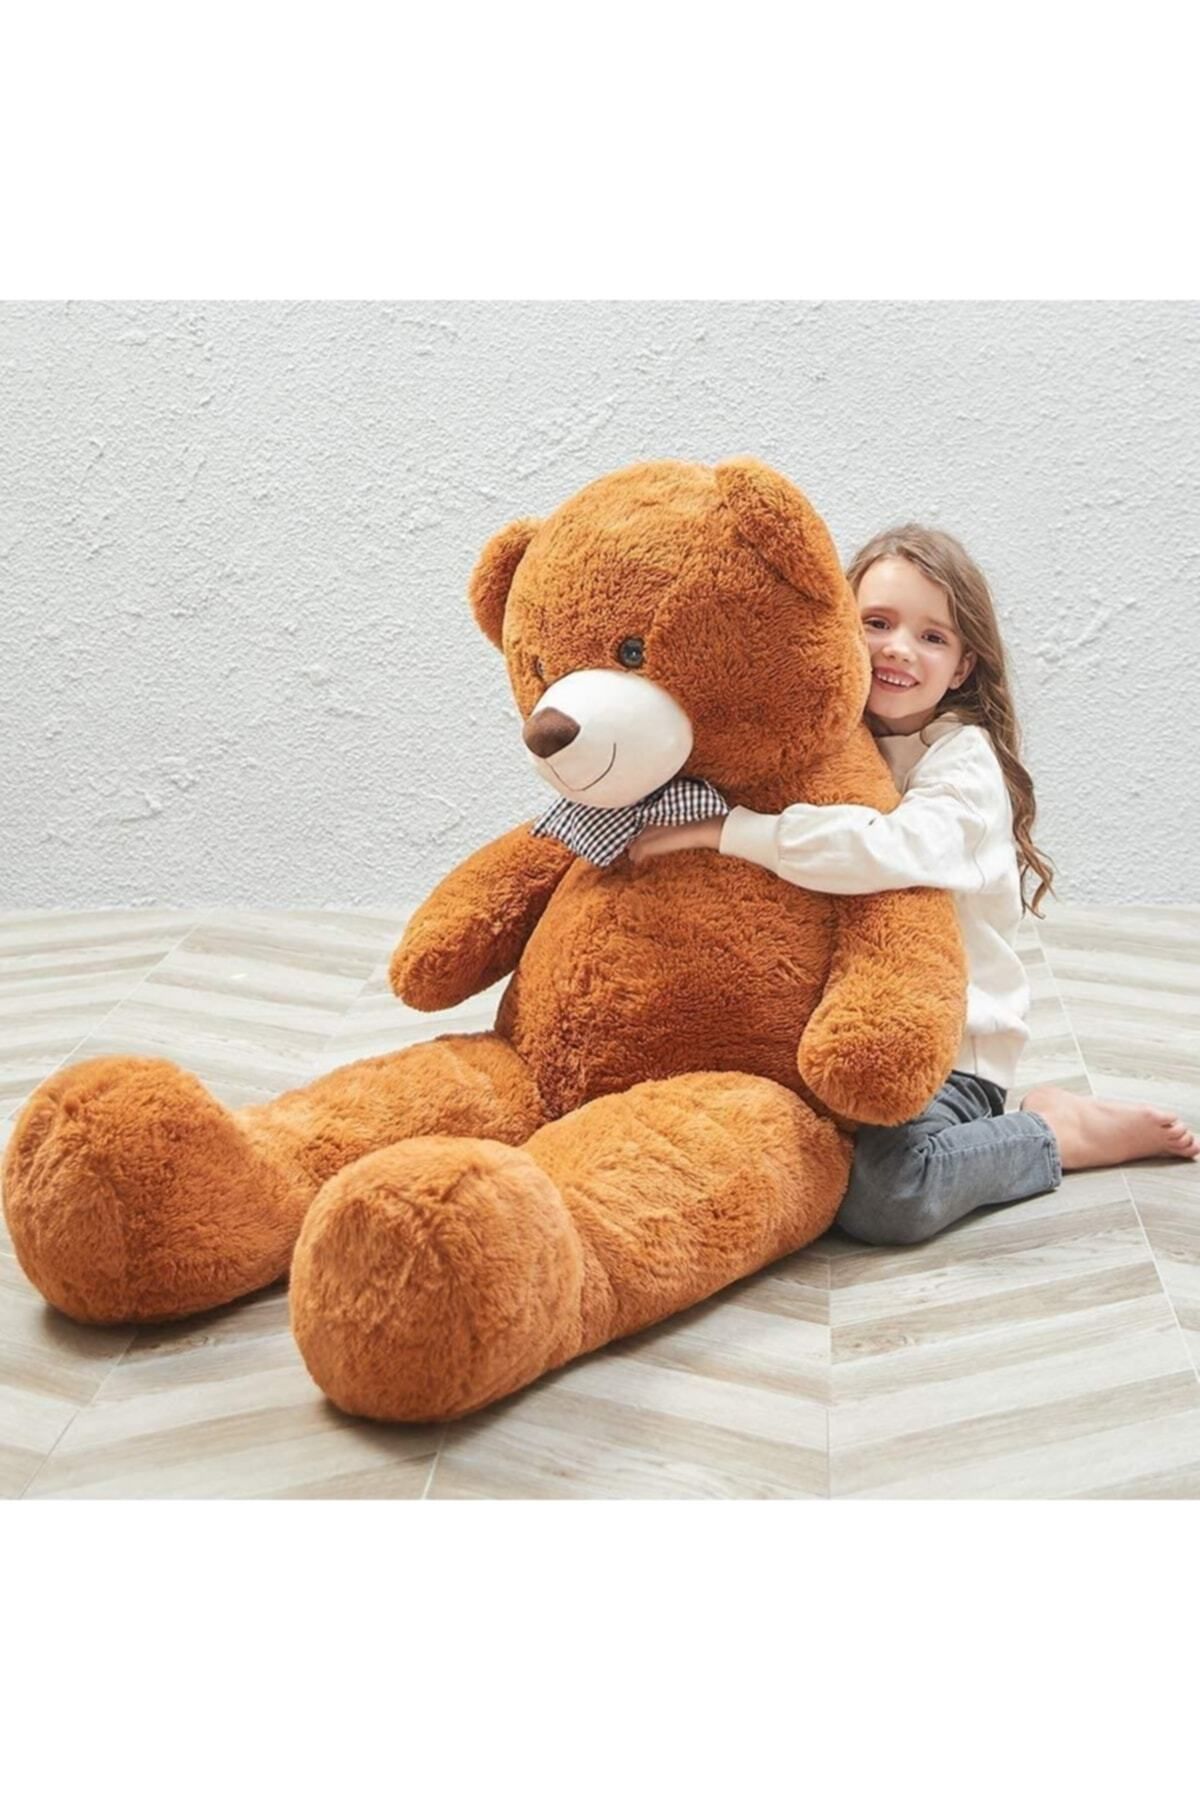 Sole خرس مخملی زیبا 130 سانتی متری با پاپیون - هدیه ویژه برای عاشقان